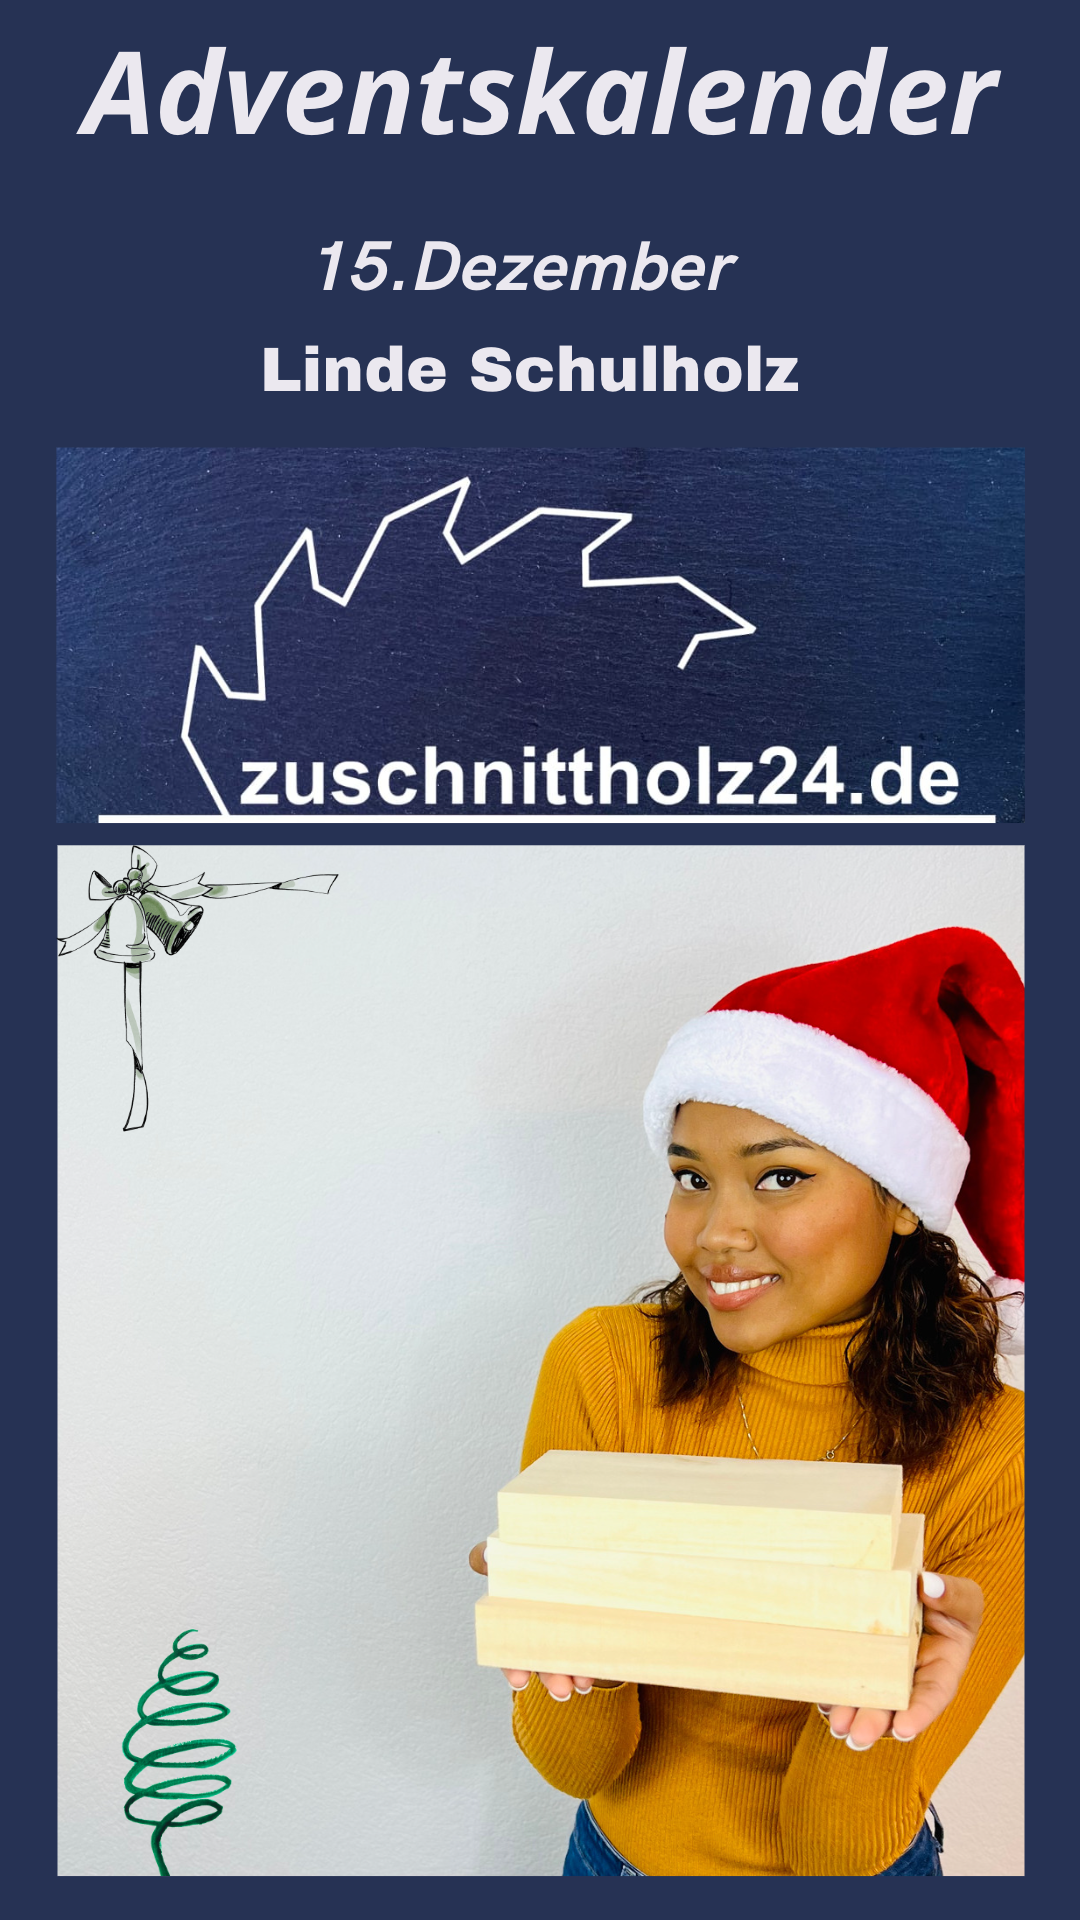 15._mit_Anderung_Adventskalender_Zuschnittholz24